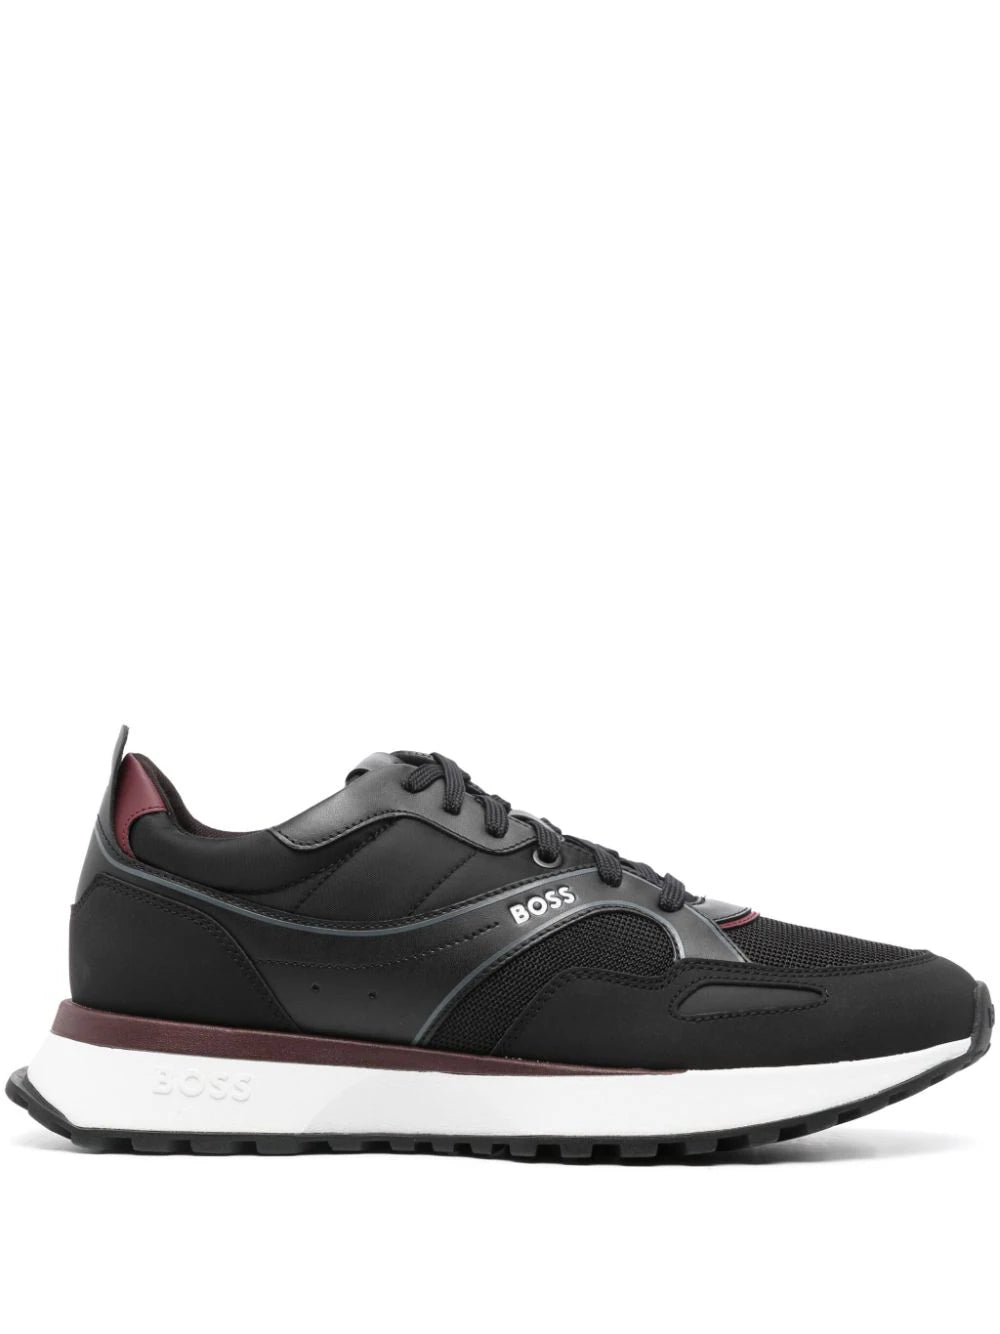 BOSS MEN Panelled Low Top Sneakers Black/White/Bordeaux Red - MAISONDEFASHION.COM